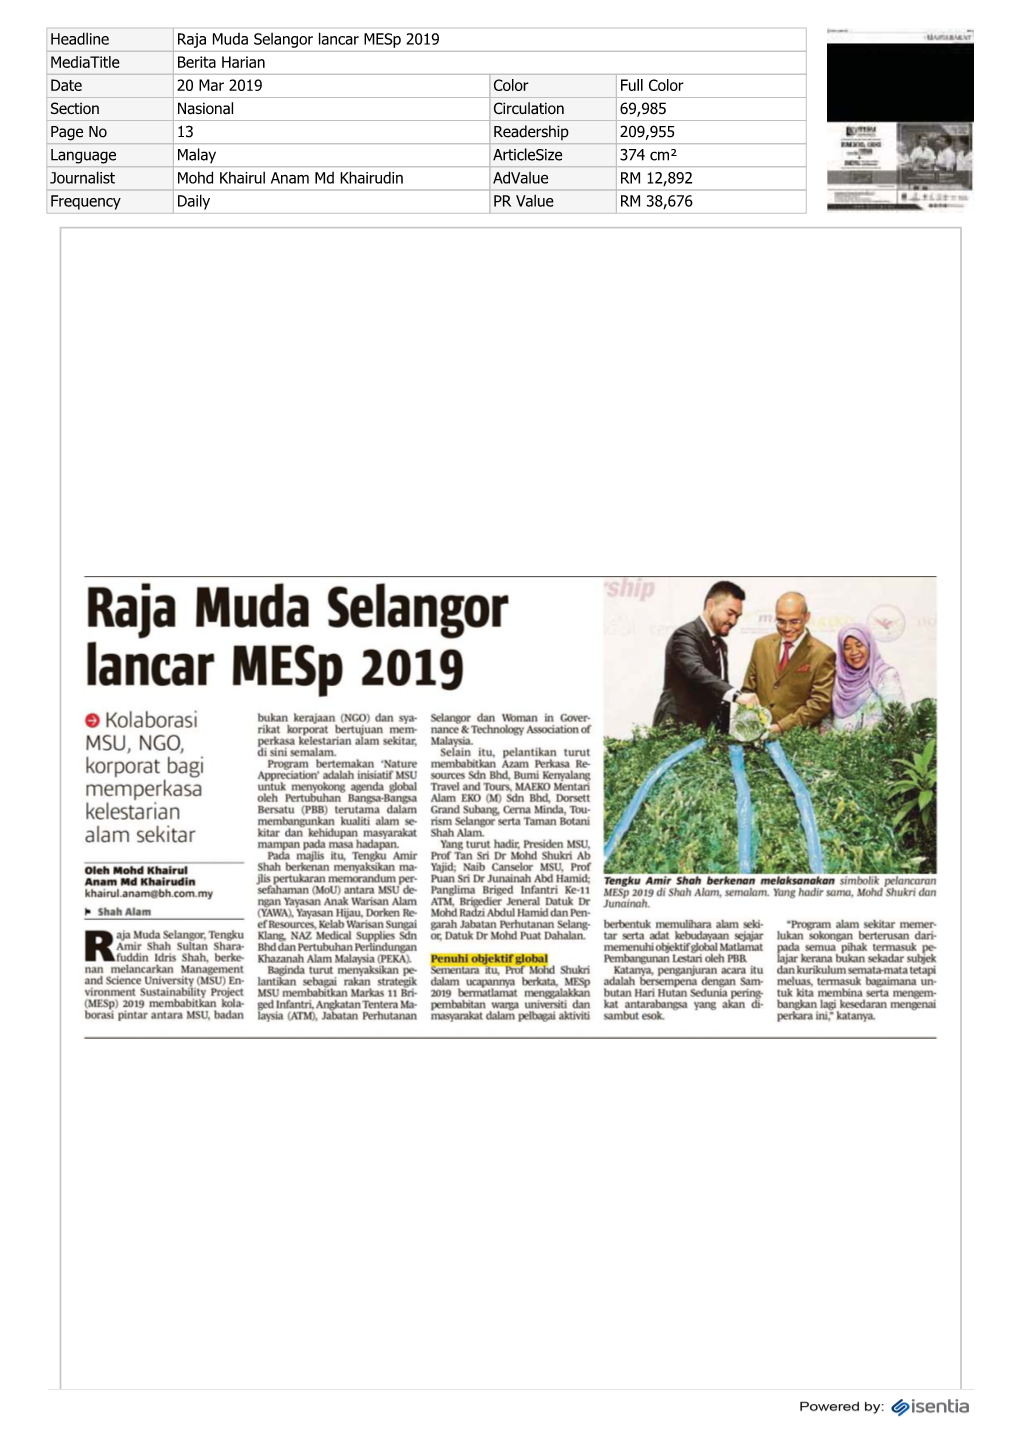 Raja Muda Selangor Lancar Mesp 2019